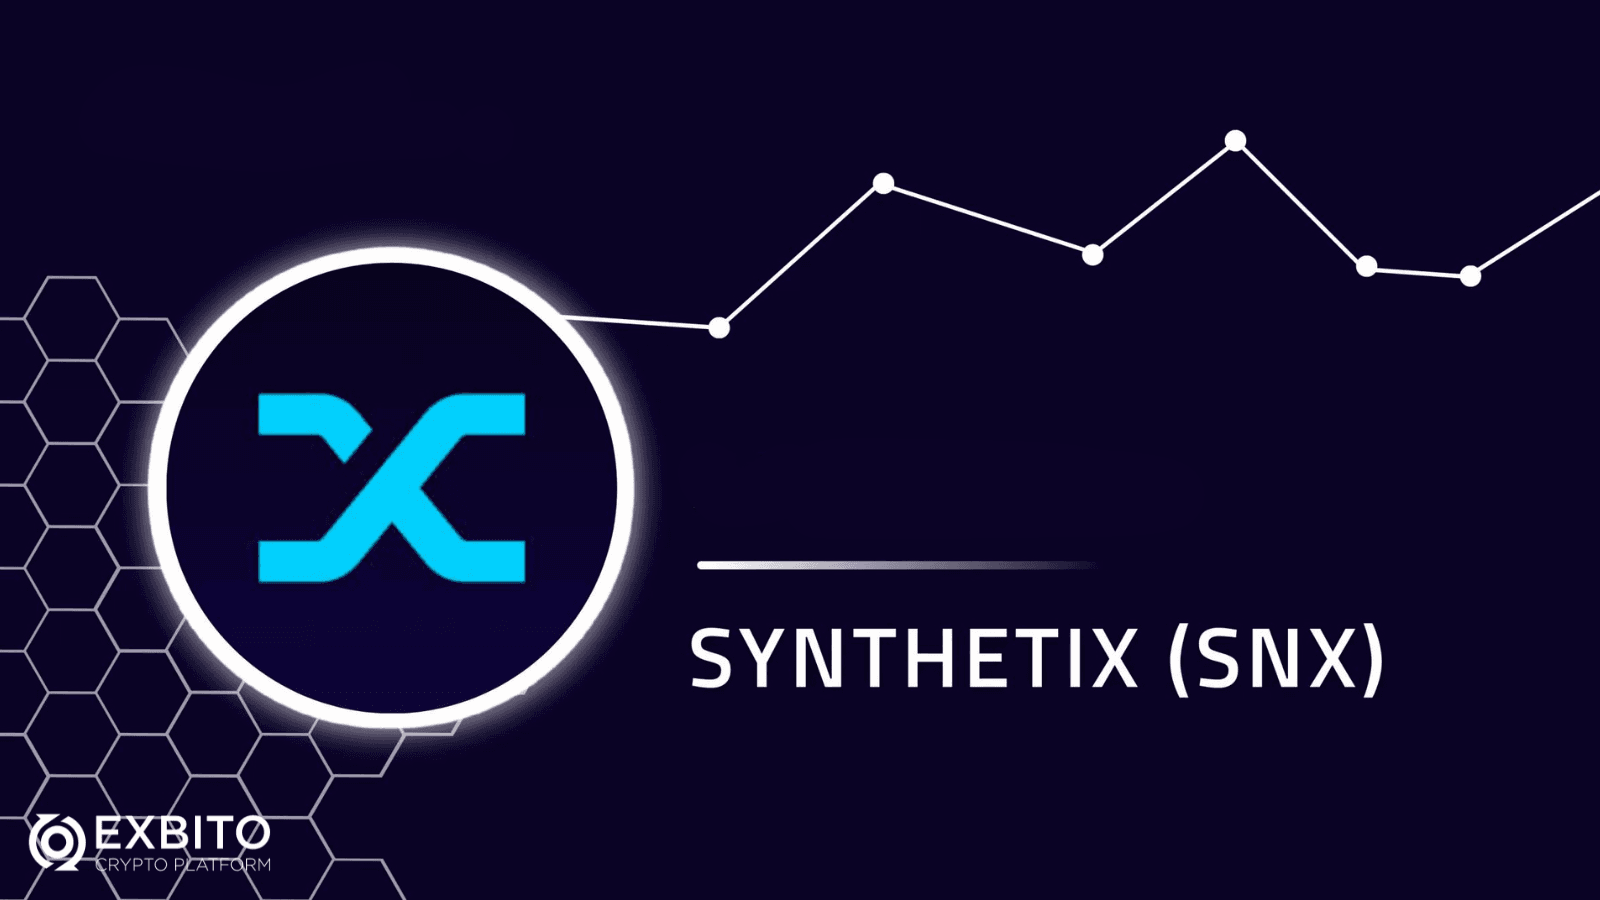 خلاصه وایت پیپر سینتتیکس (Synthetix)